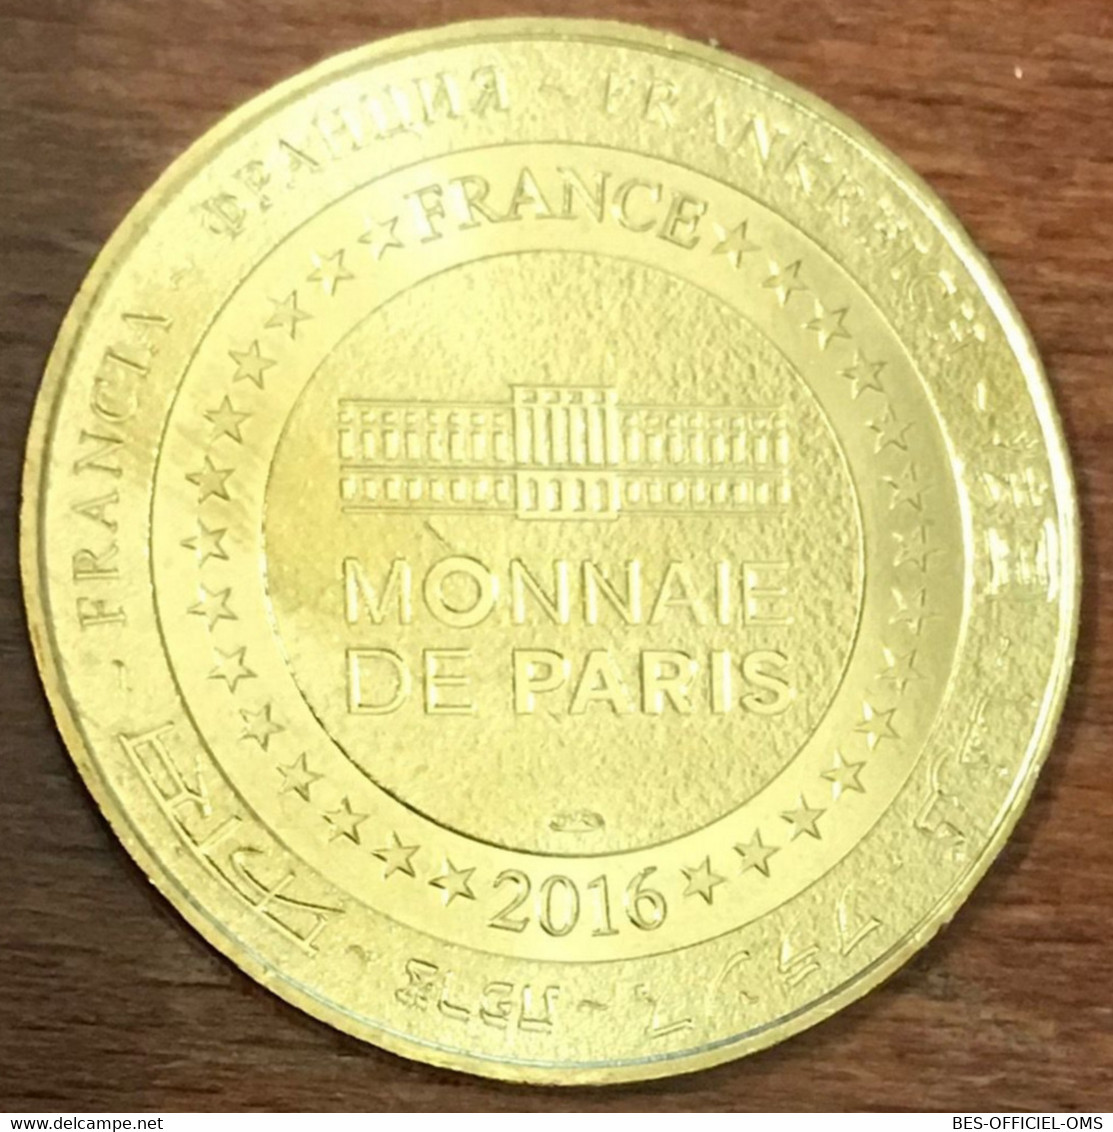 13 ARLES AMPHITHÉATRE MDP 2016 MEDAILLE SOUVENIR MONNAIE DE PARIS JETON TOURISTIQUE MEDALS COINS TOKENS - 2016